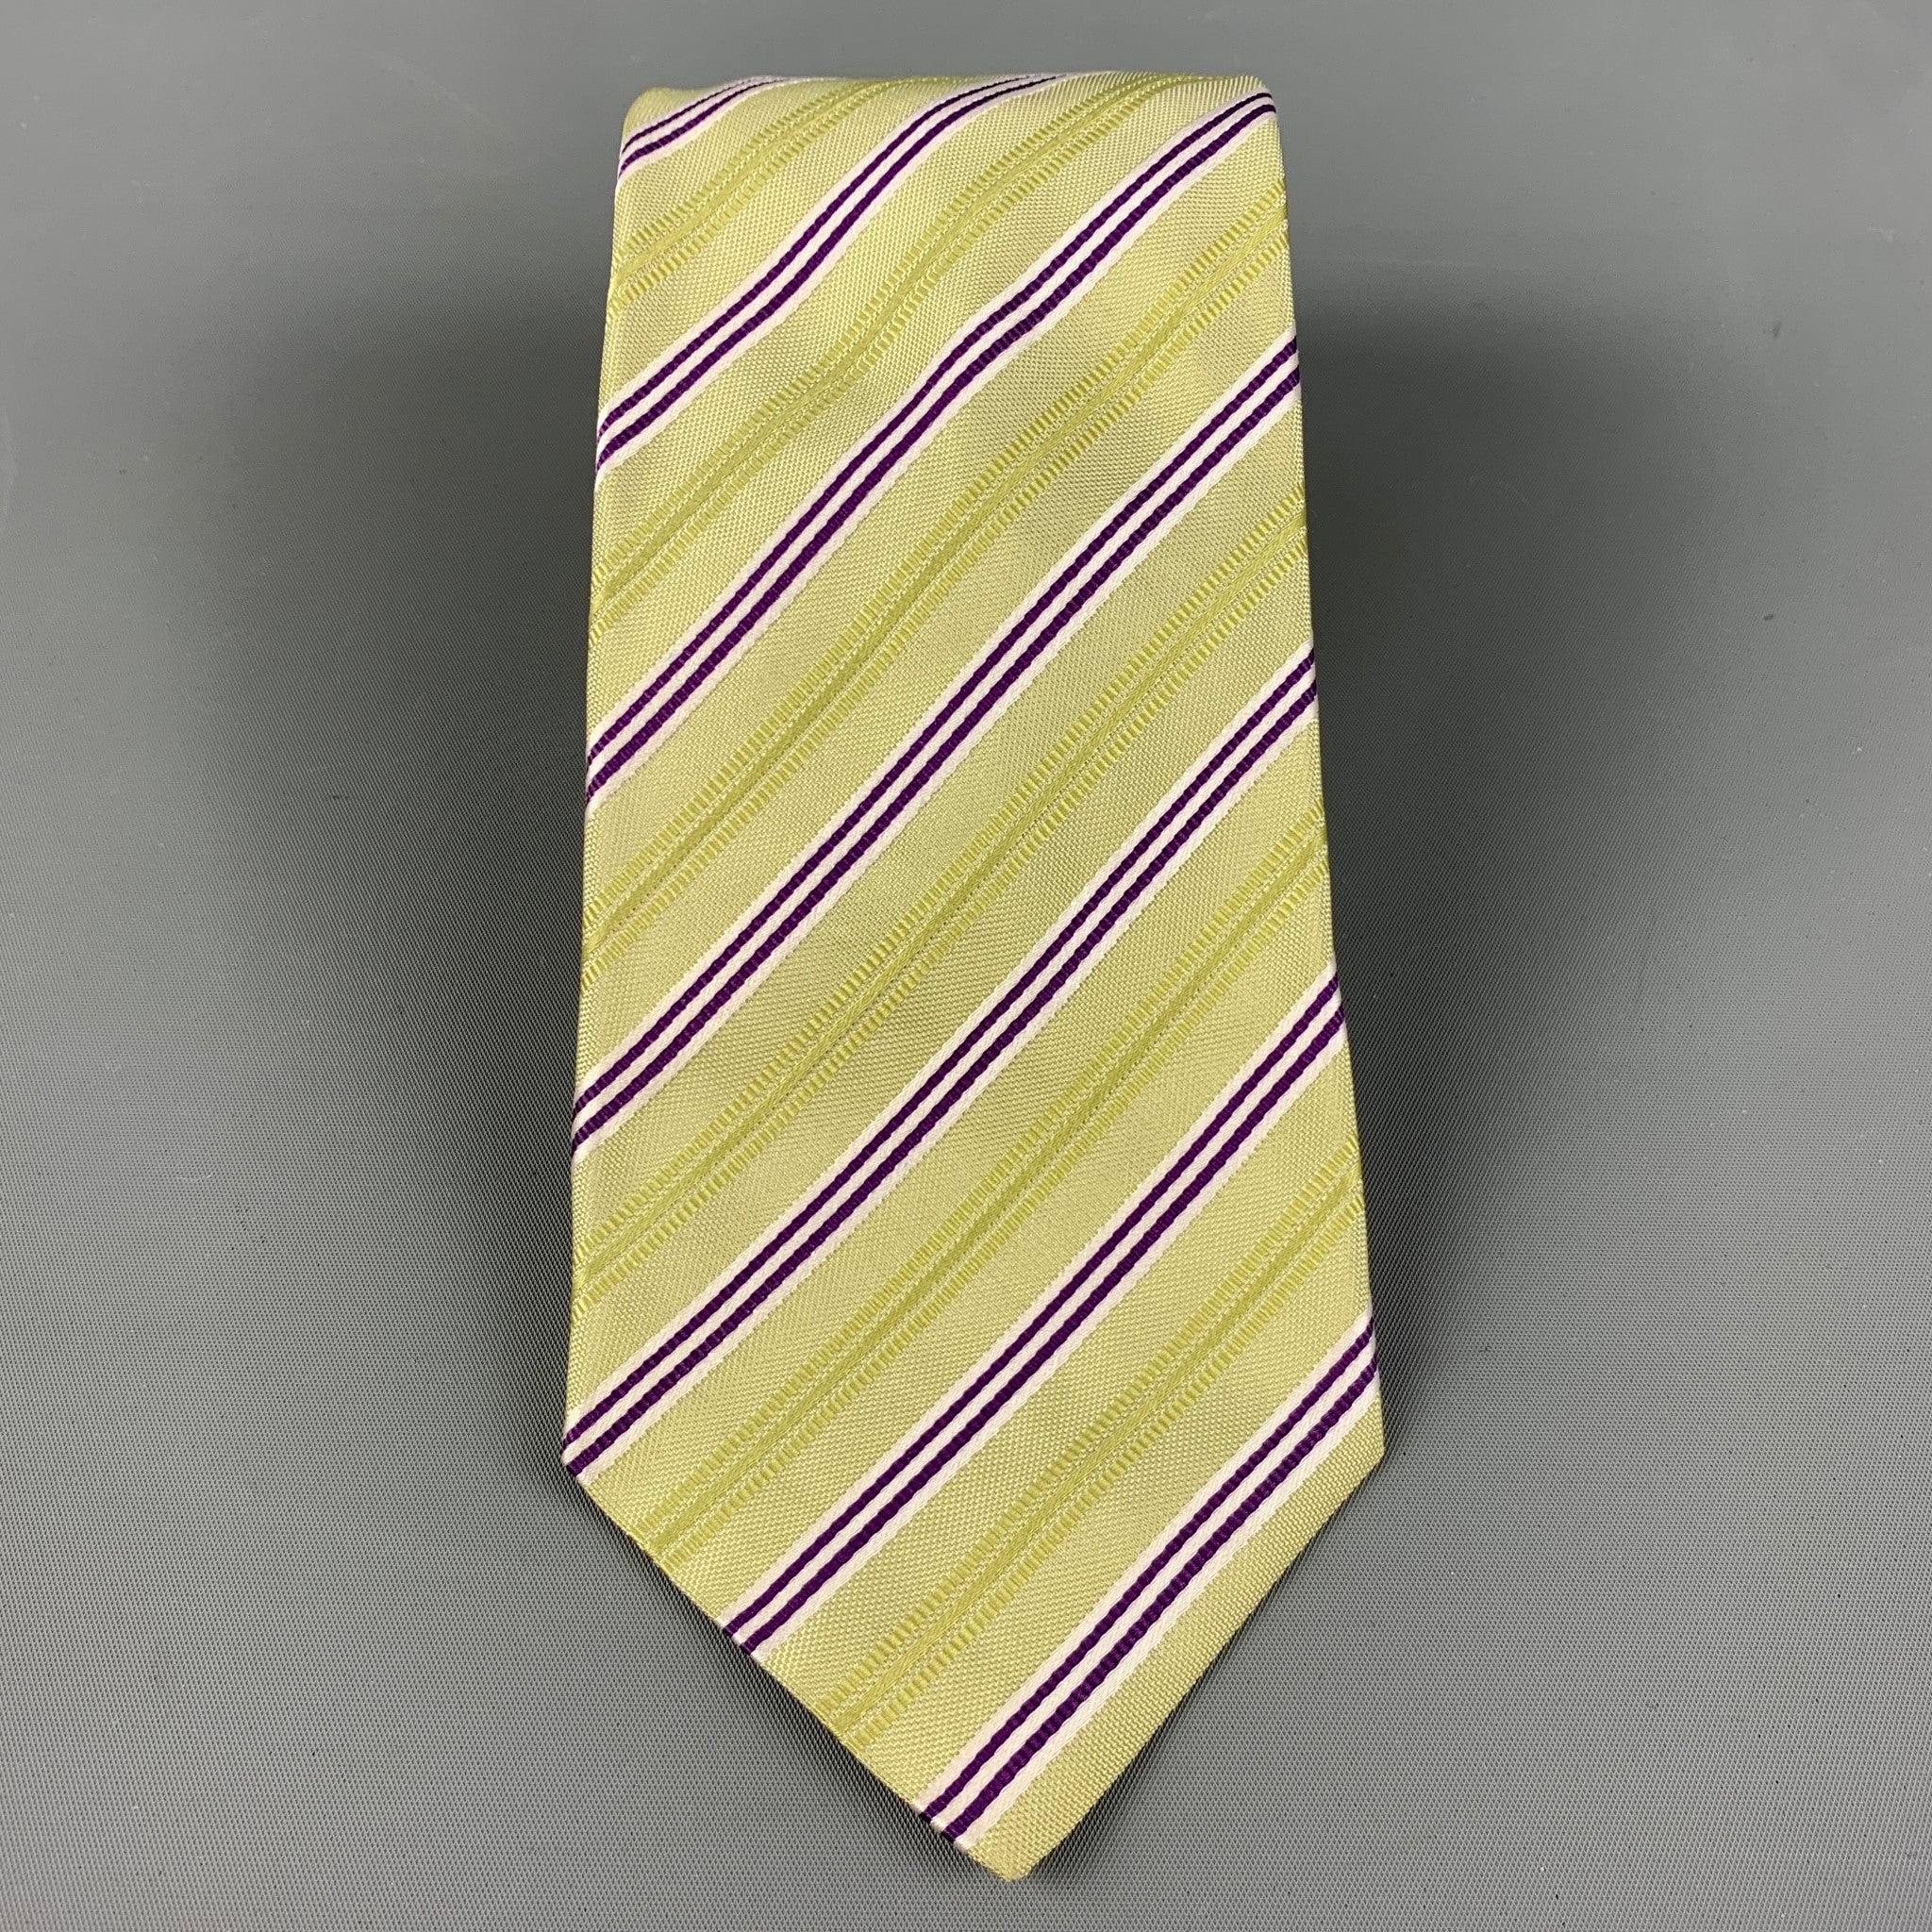 La cravate KITON se décline en rayures diagonales vertes et violettes.
Très bon état d'origine.
 

Mesures : 
  
Largeur : 4 pouces 
Longueur : 58 pouces 

  
  
 
Référence Sui Generis : 124869
Catégorie : Cravate
Plus de détails
    
Marque : 